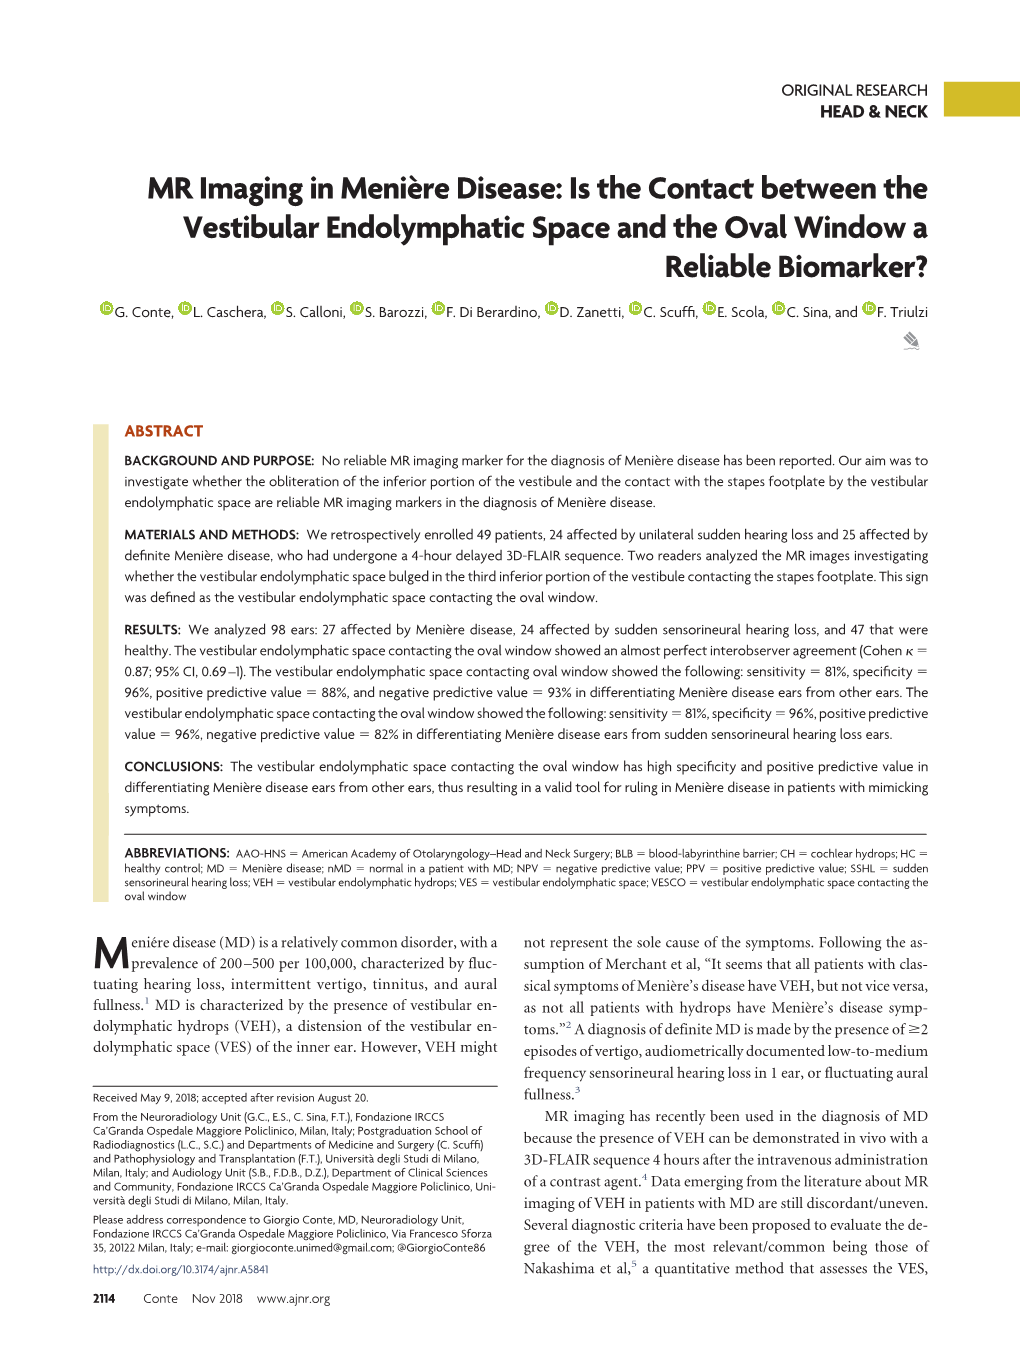 MR Imaging in Menière Disease: Is the Contact Between the Vestibular